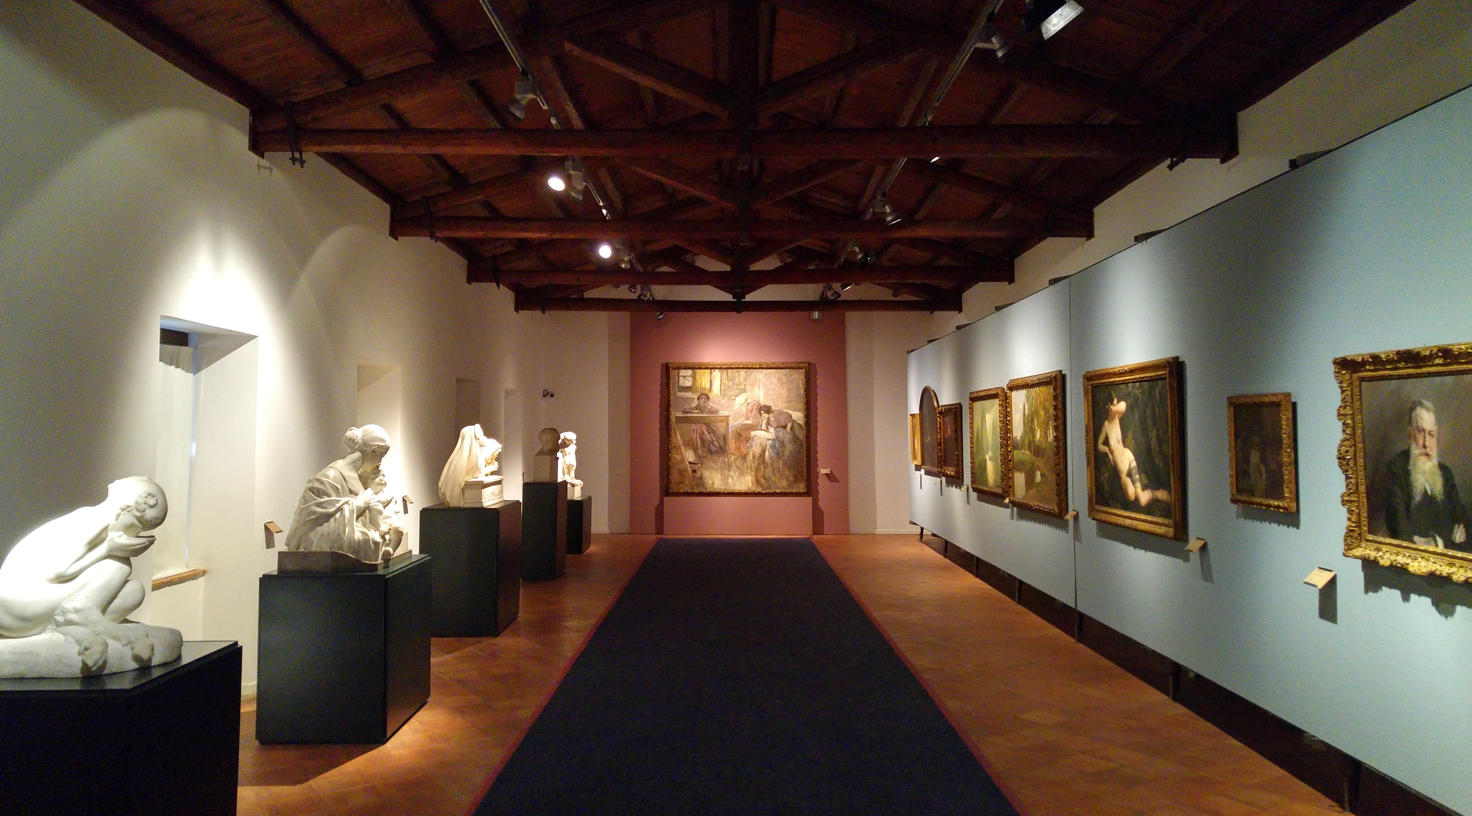 Galería de Arte Moderno - sala XVIII del museo